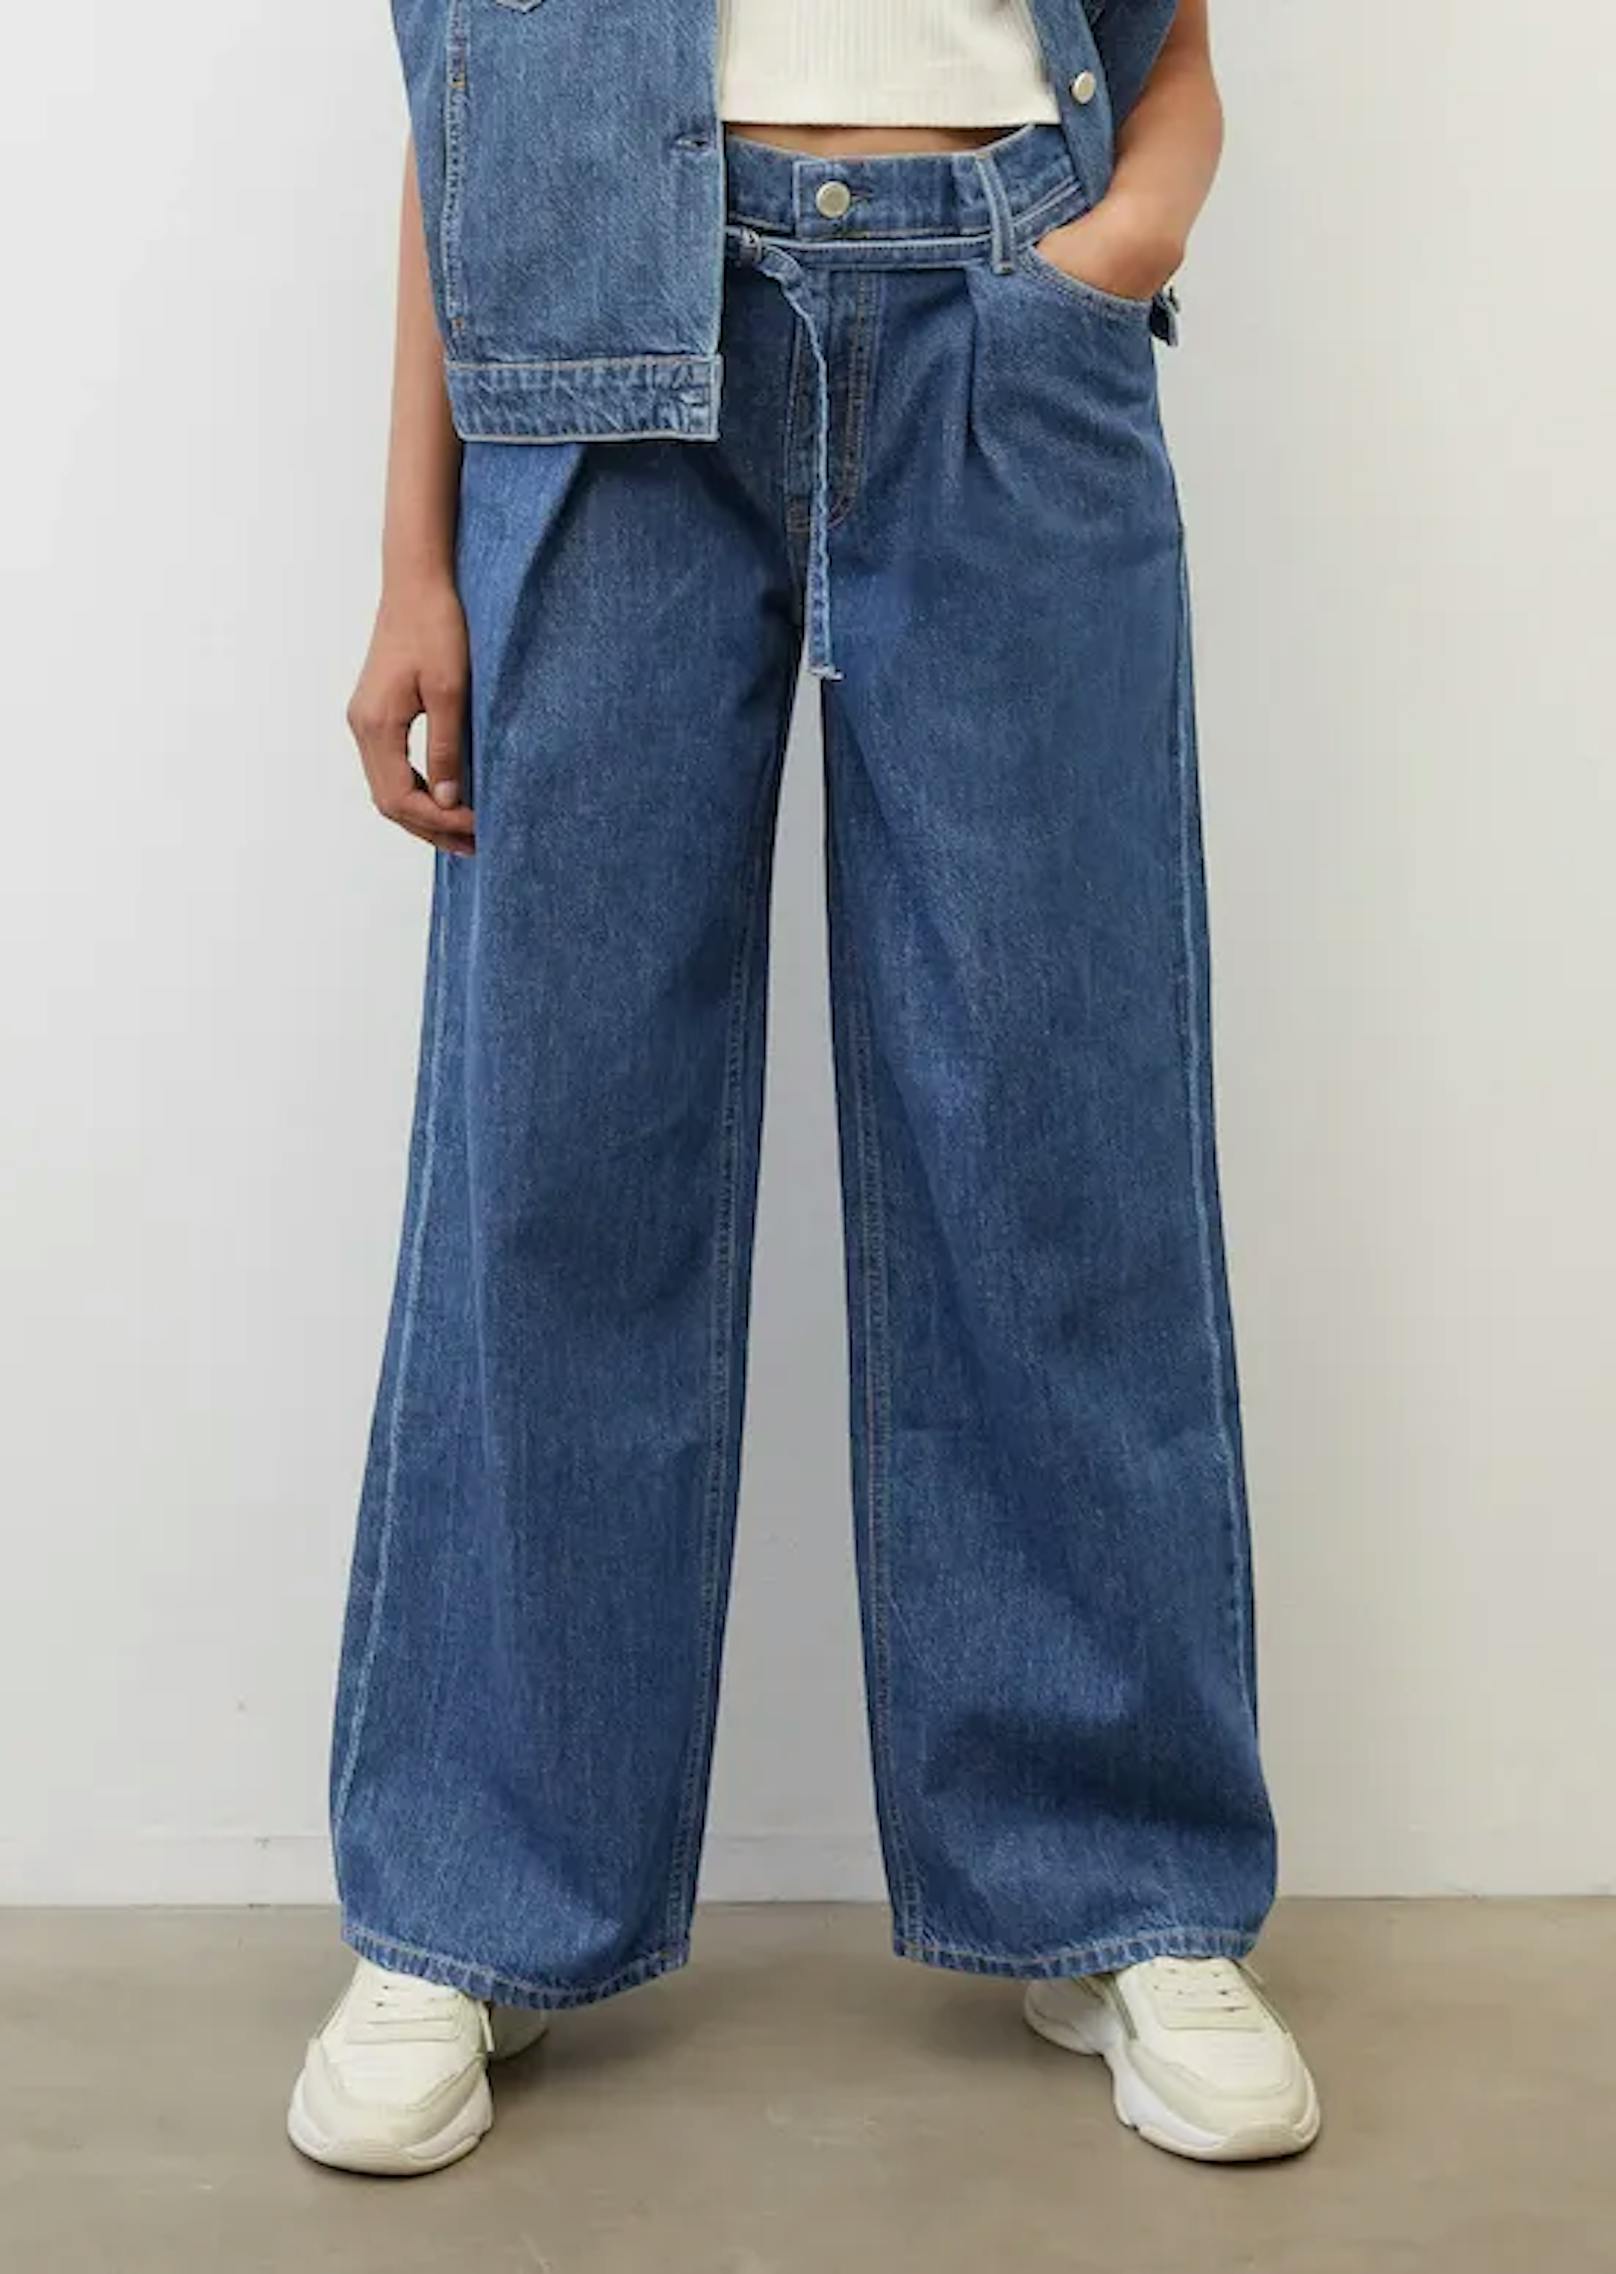 Anzugshosen müssen nicht sein. Vor allem wenn eine luftige Jeans reicht. Diese sind zugleich leger und formell, wenn sie mit dem richtigen Oberteil kombiniert werden.